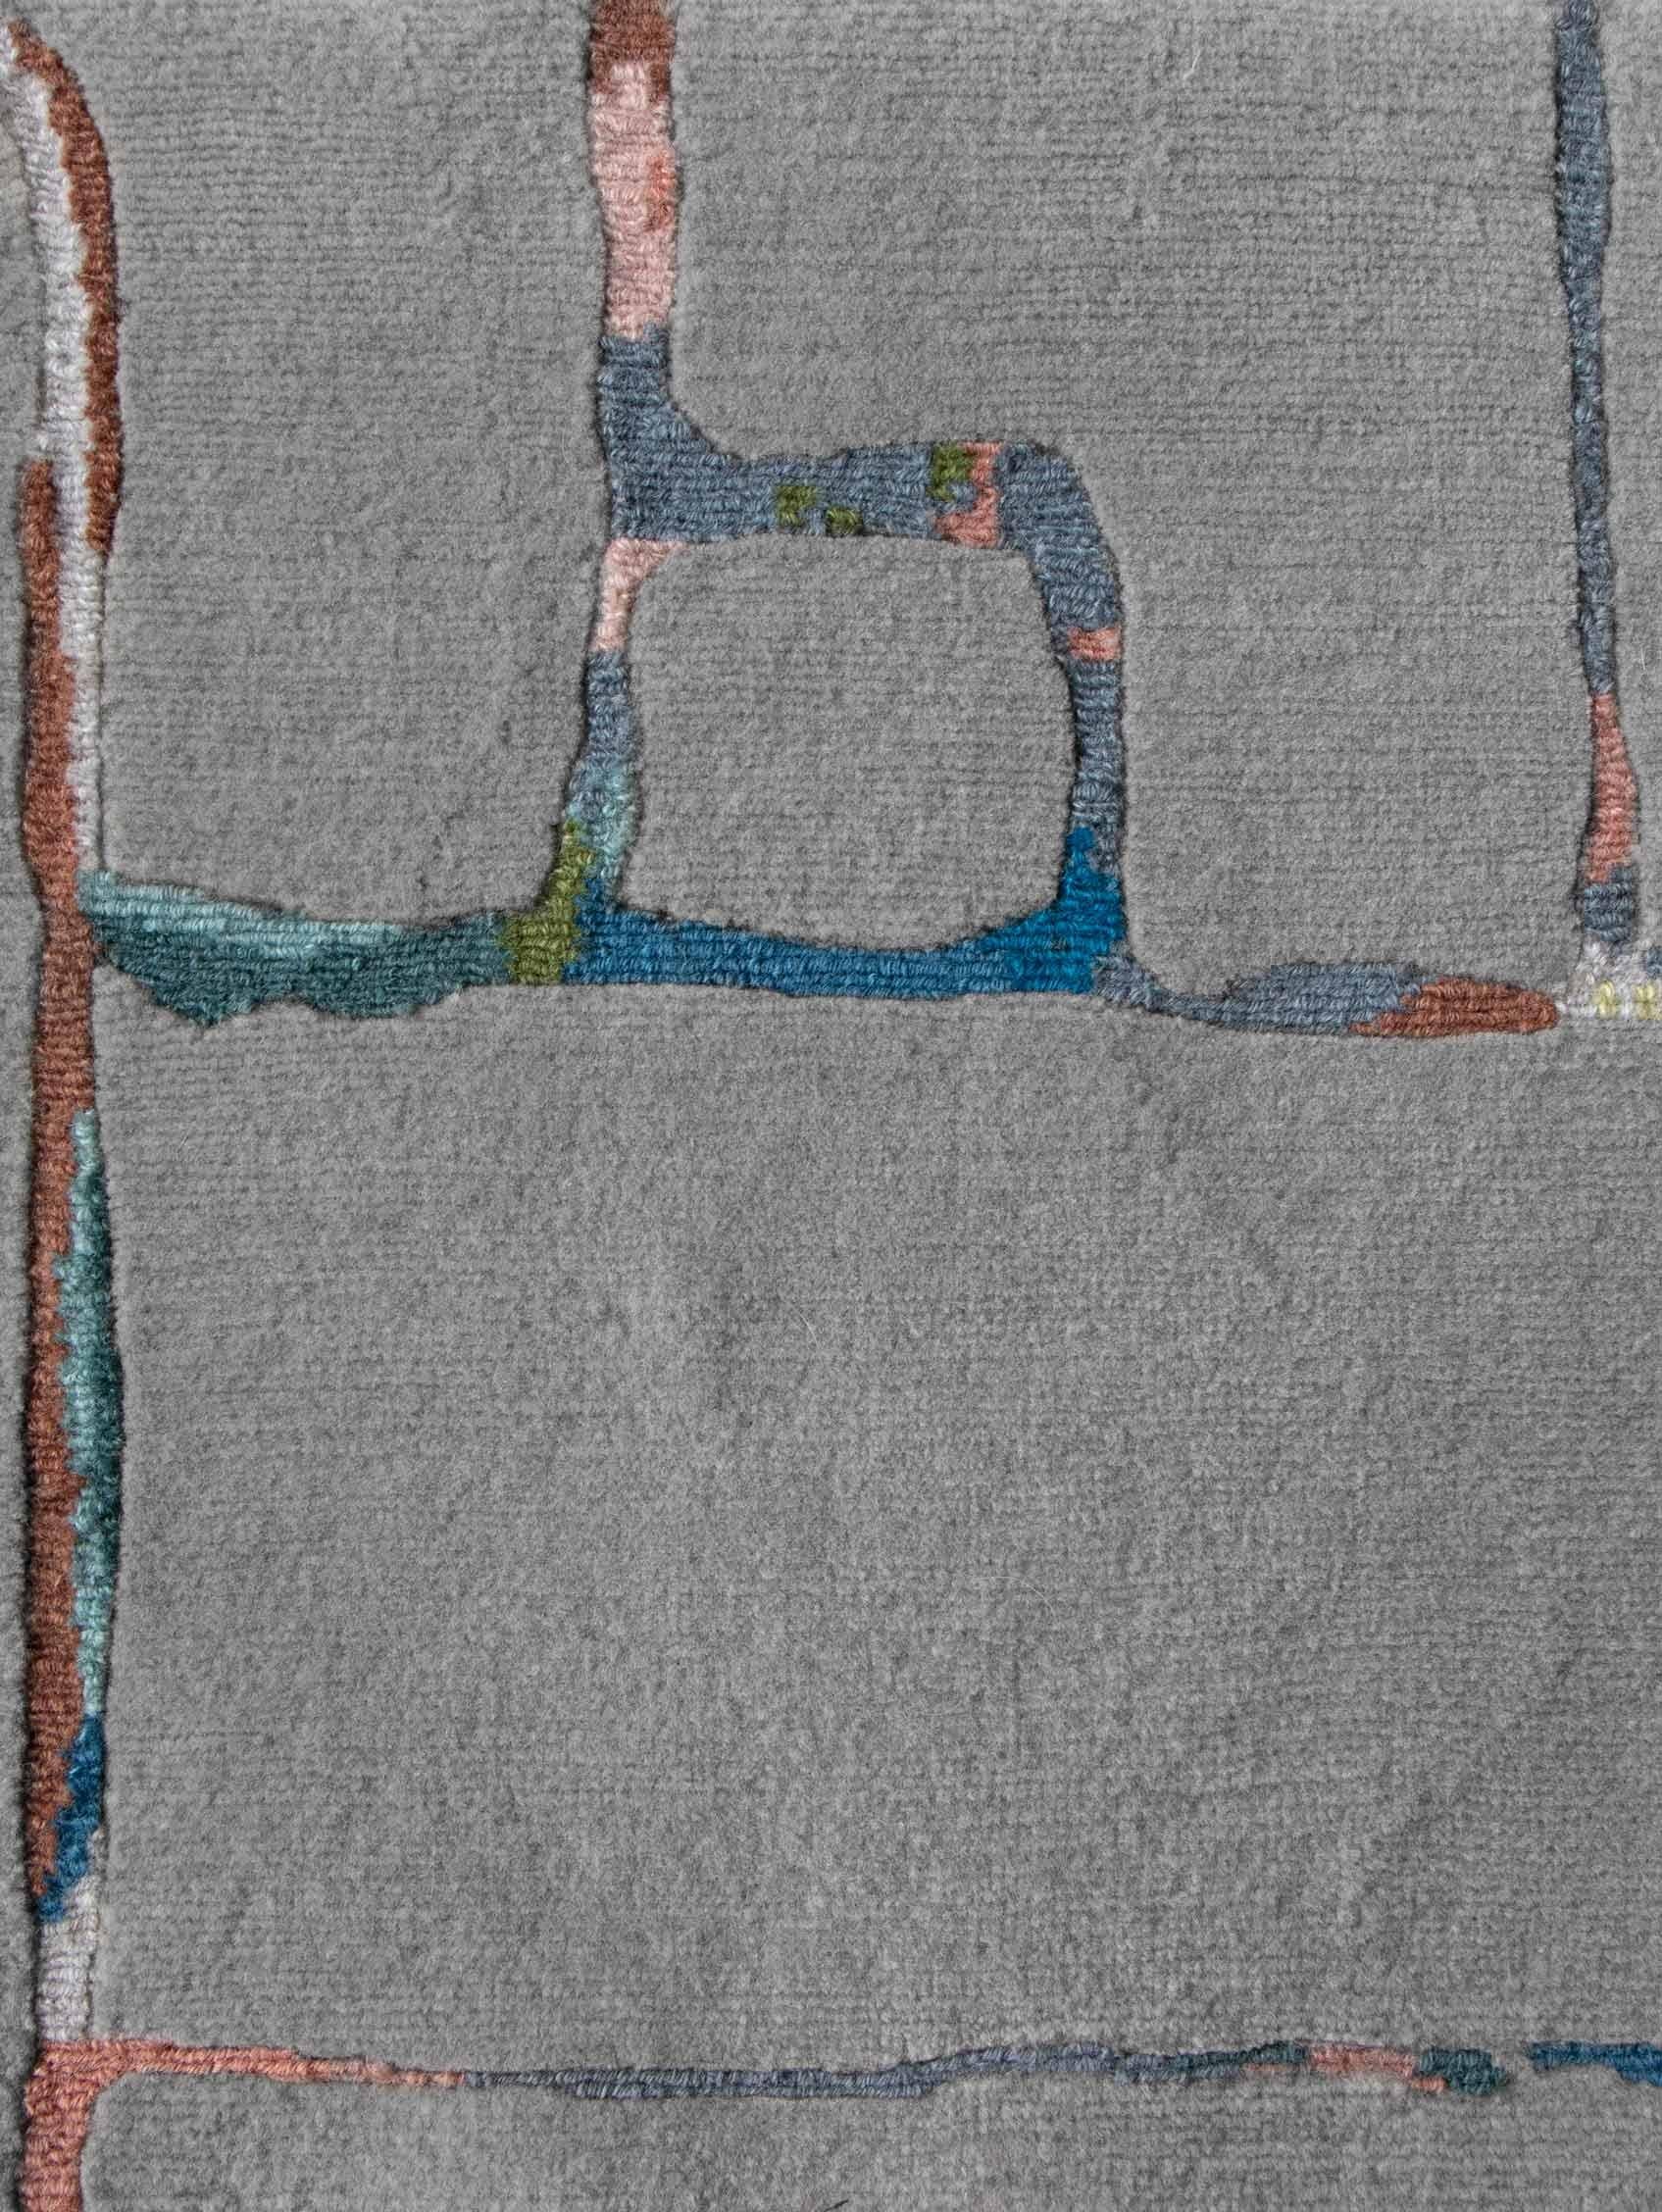 Motif du tapis : Portico - Greyscale Multi
MATERIAL : 100% laine de Nouvelle-Zélande
Qualité : Tissage croisé tibétain, tissé à la main 
Taille : 8'-0